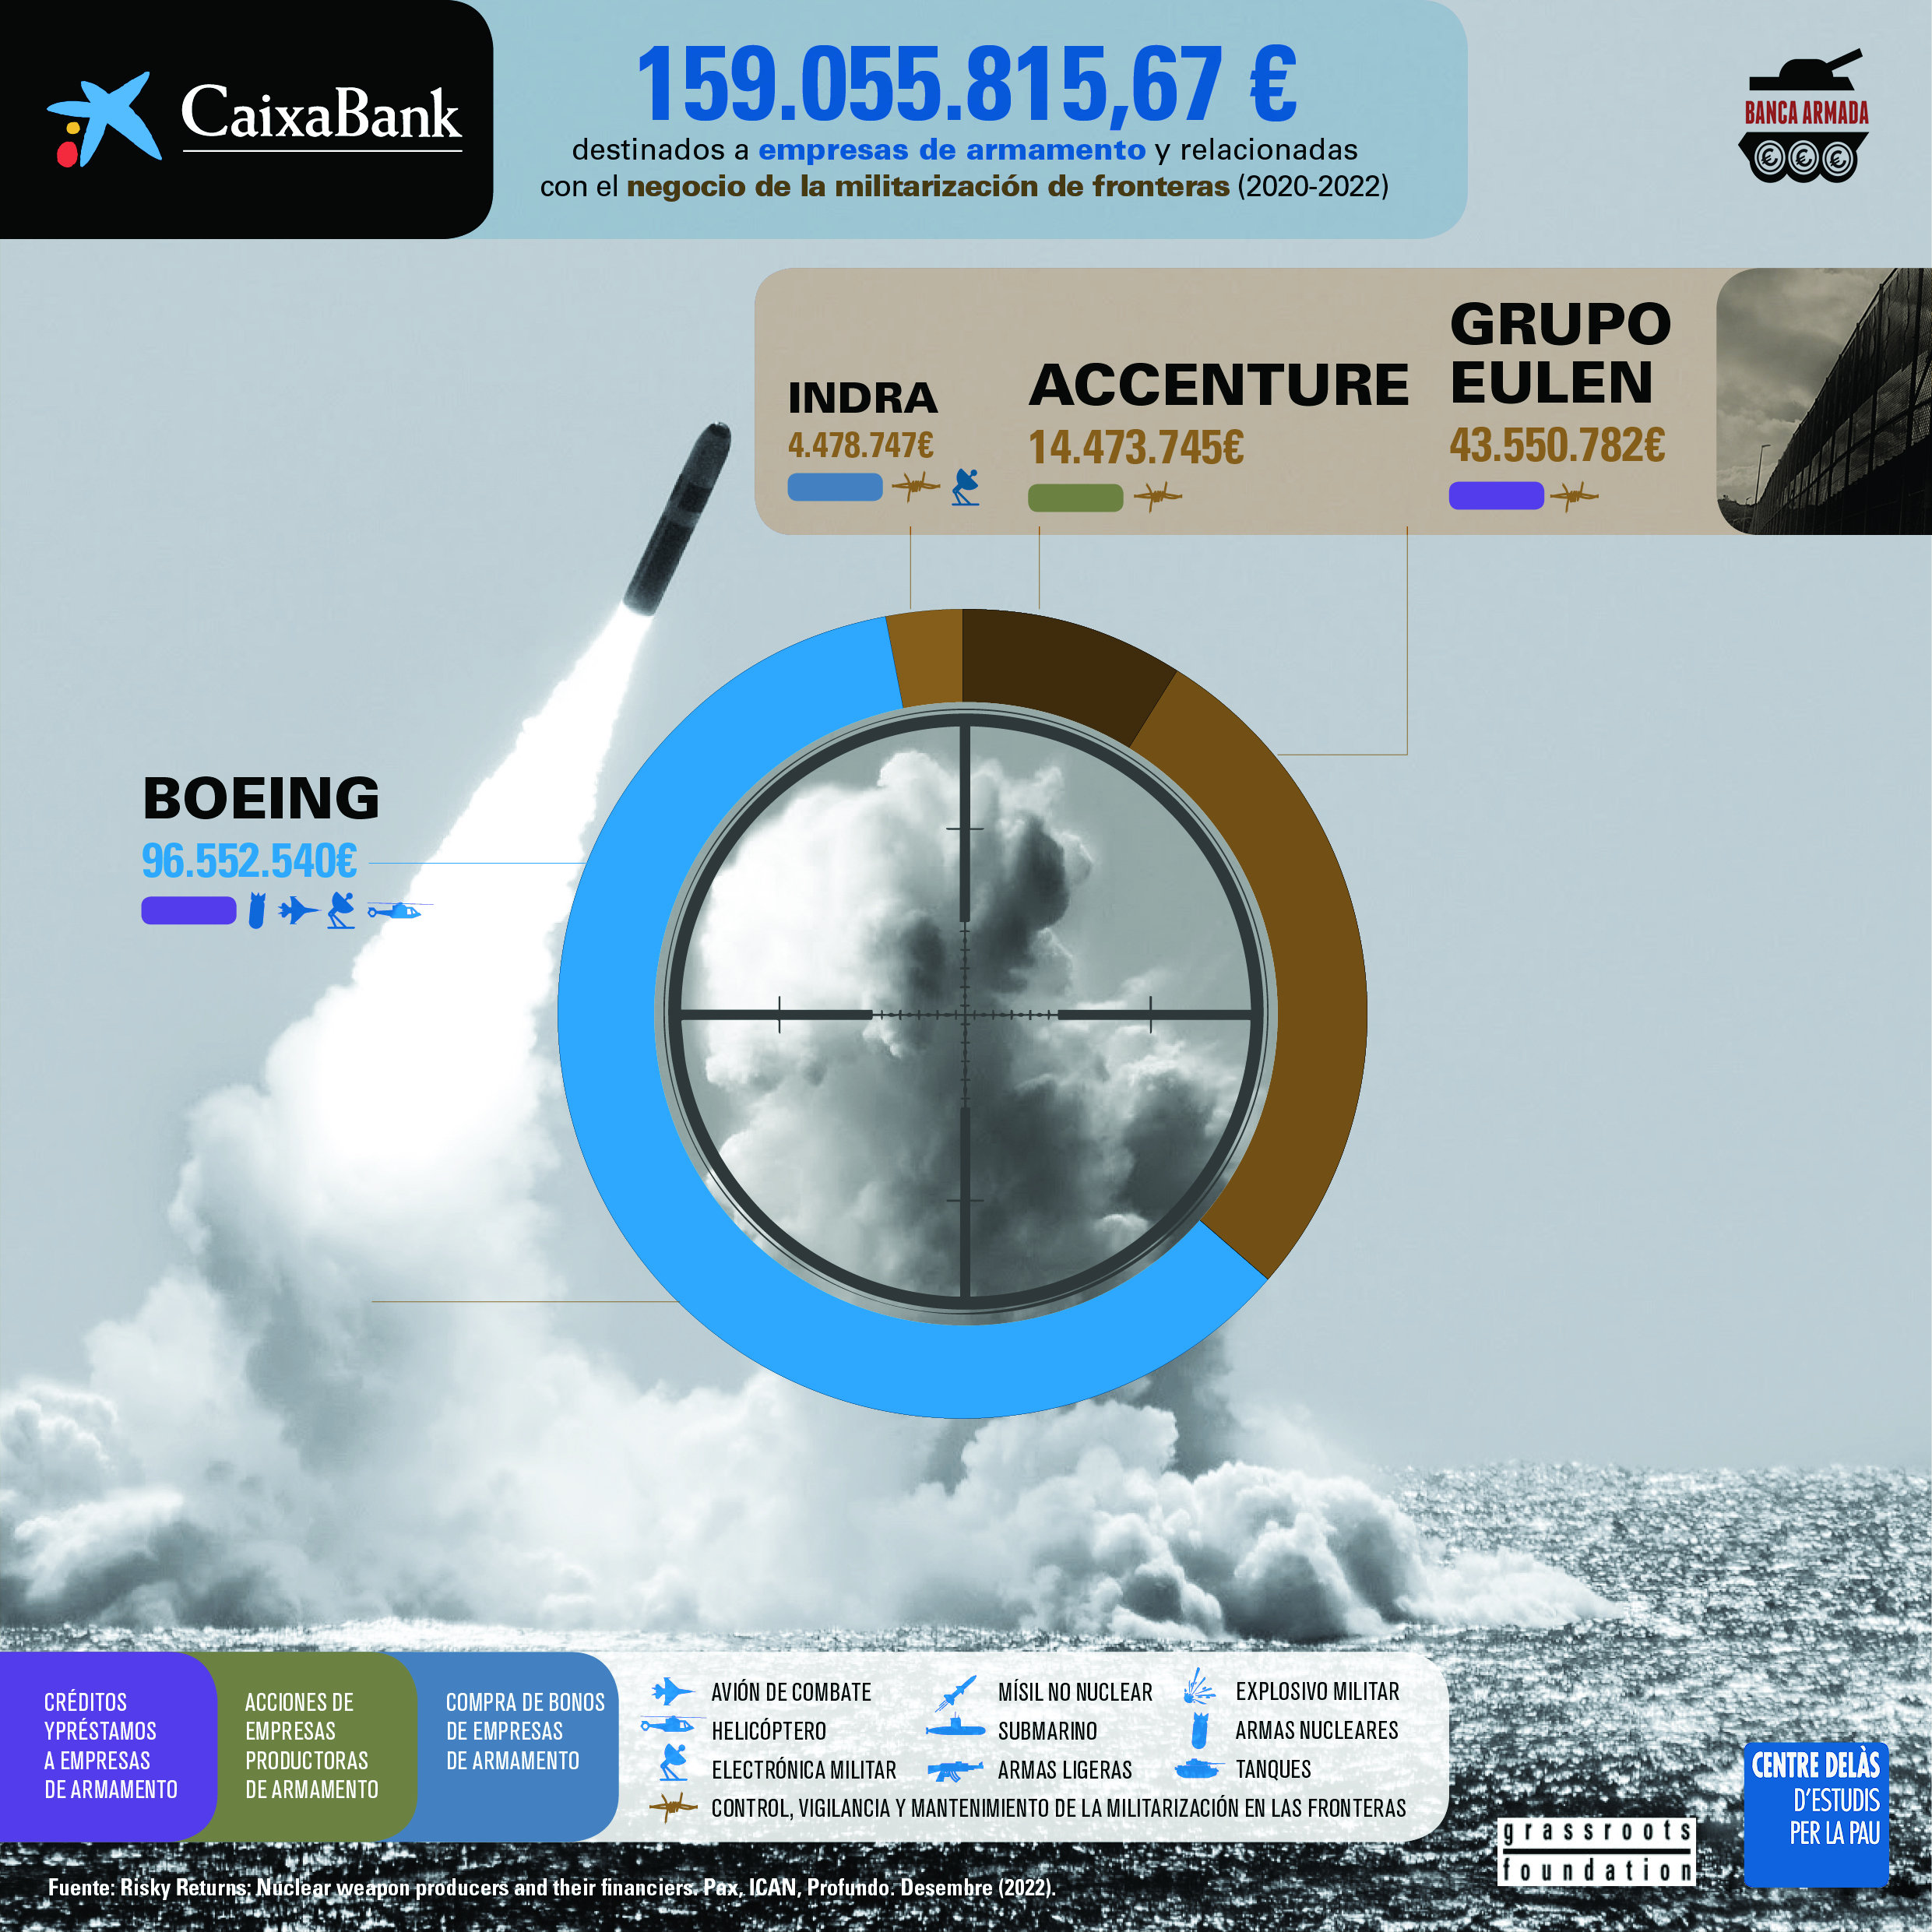 Infografía “Caixabank: financiación a empresas de armamento y relacionadas con el negocio de la militarización de fronteras (2020-2022)”